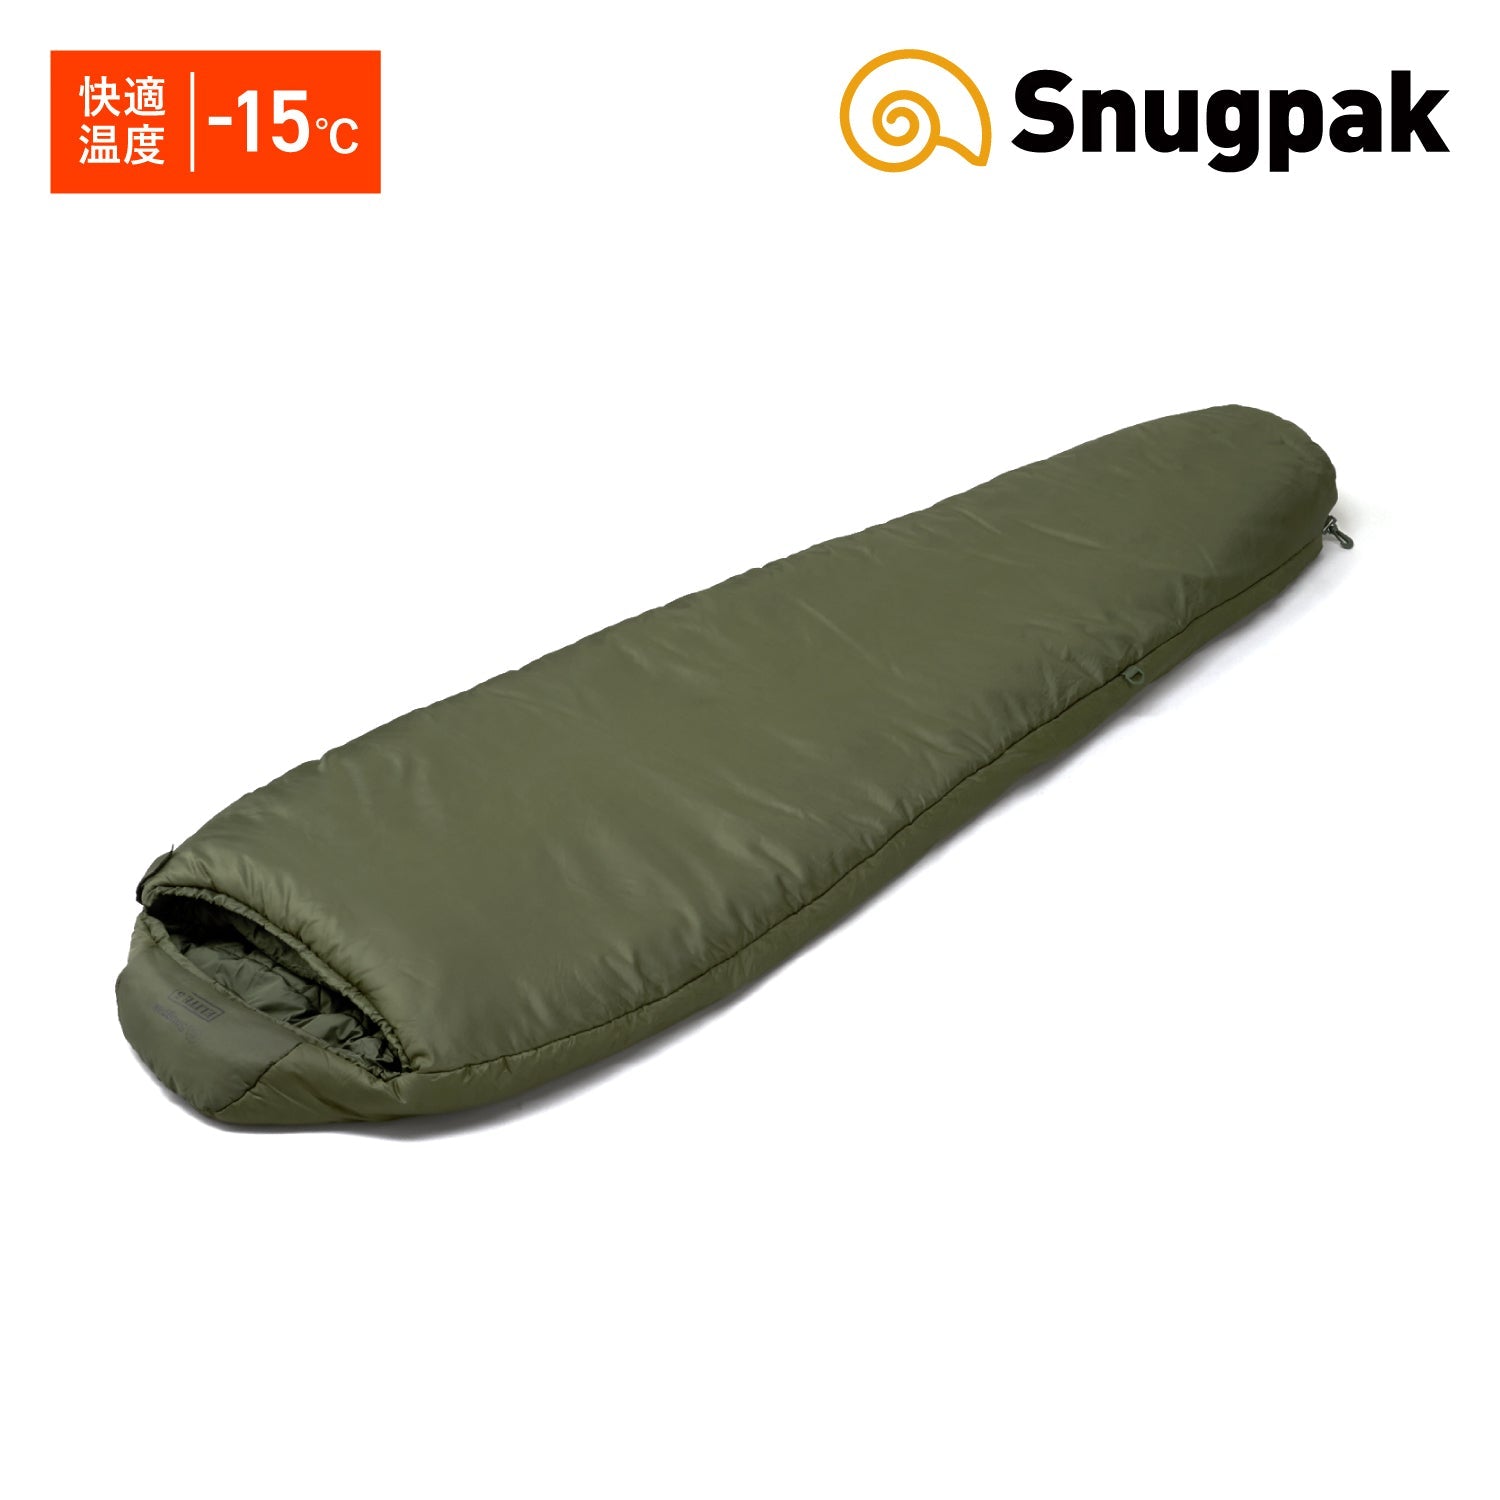 冬用寝袋 スナグパック ソフティーエリート5 快適温度-15°〜5° 特別価格